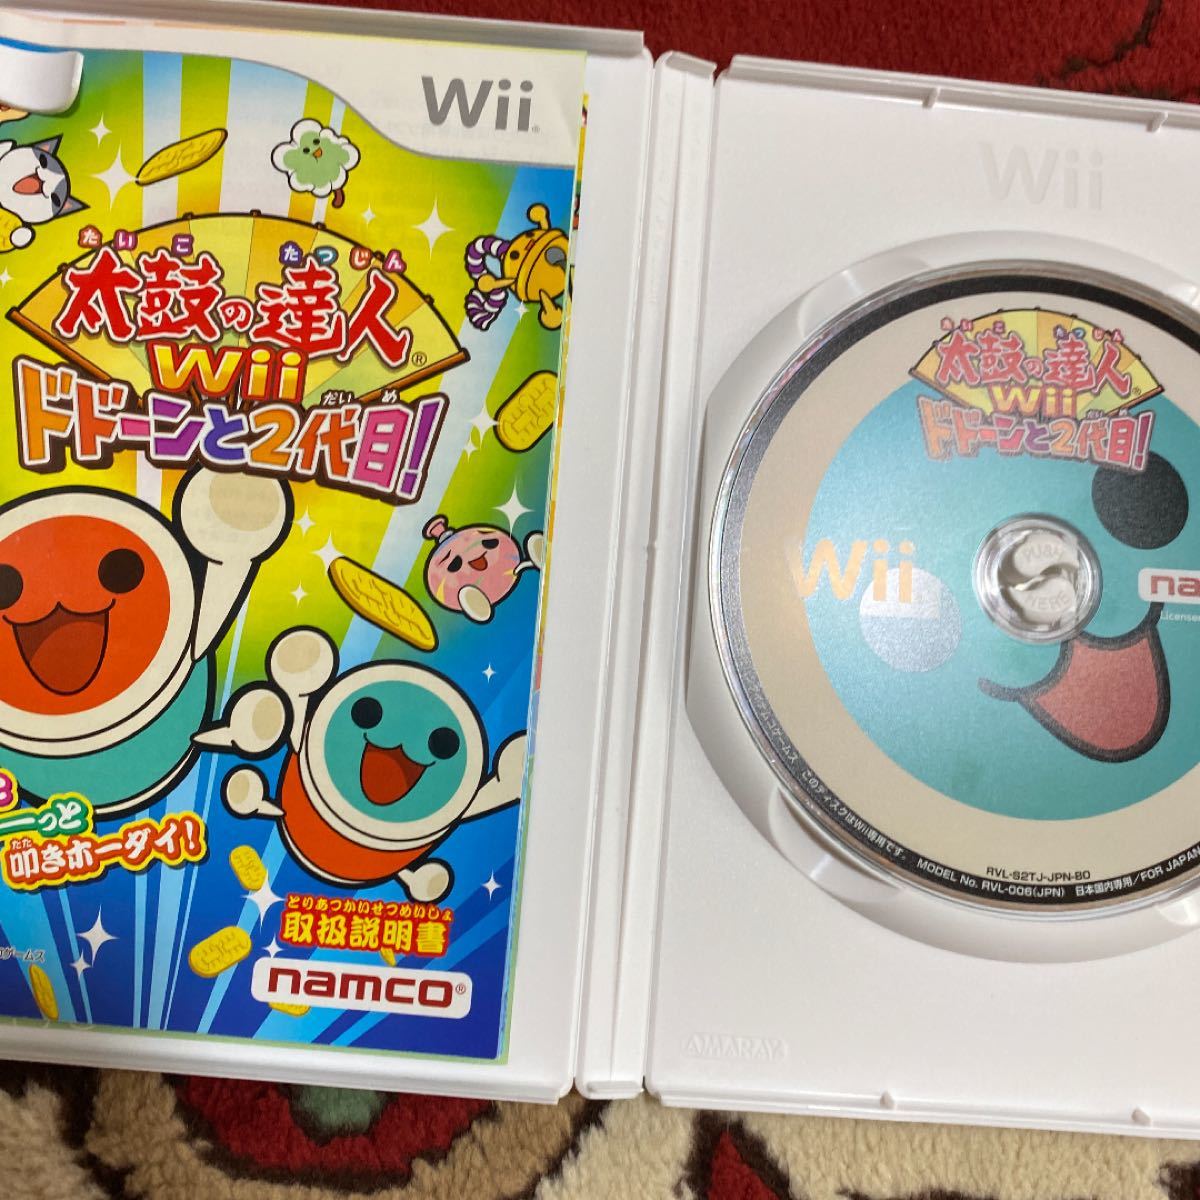 「太鼓の達人Wii ドドーンと2代目! ソフト単品版」